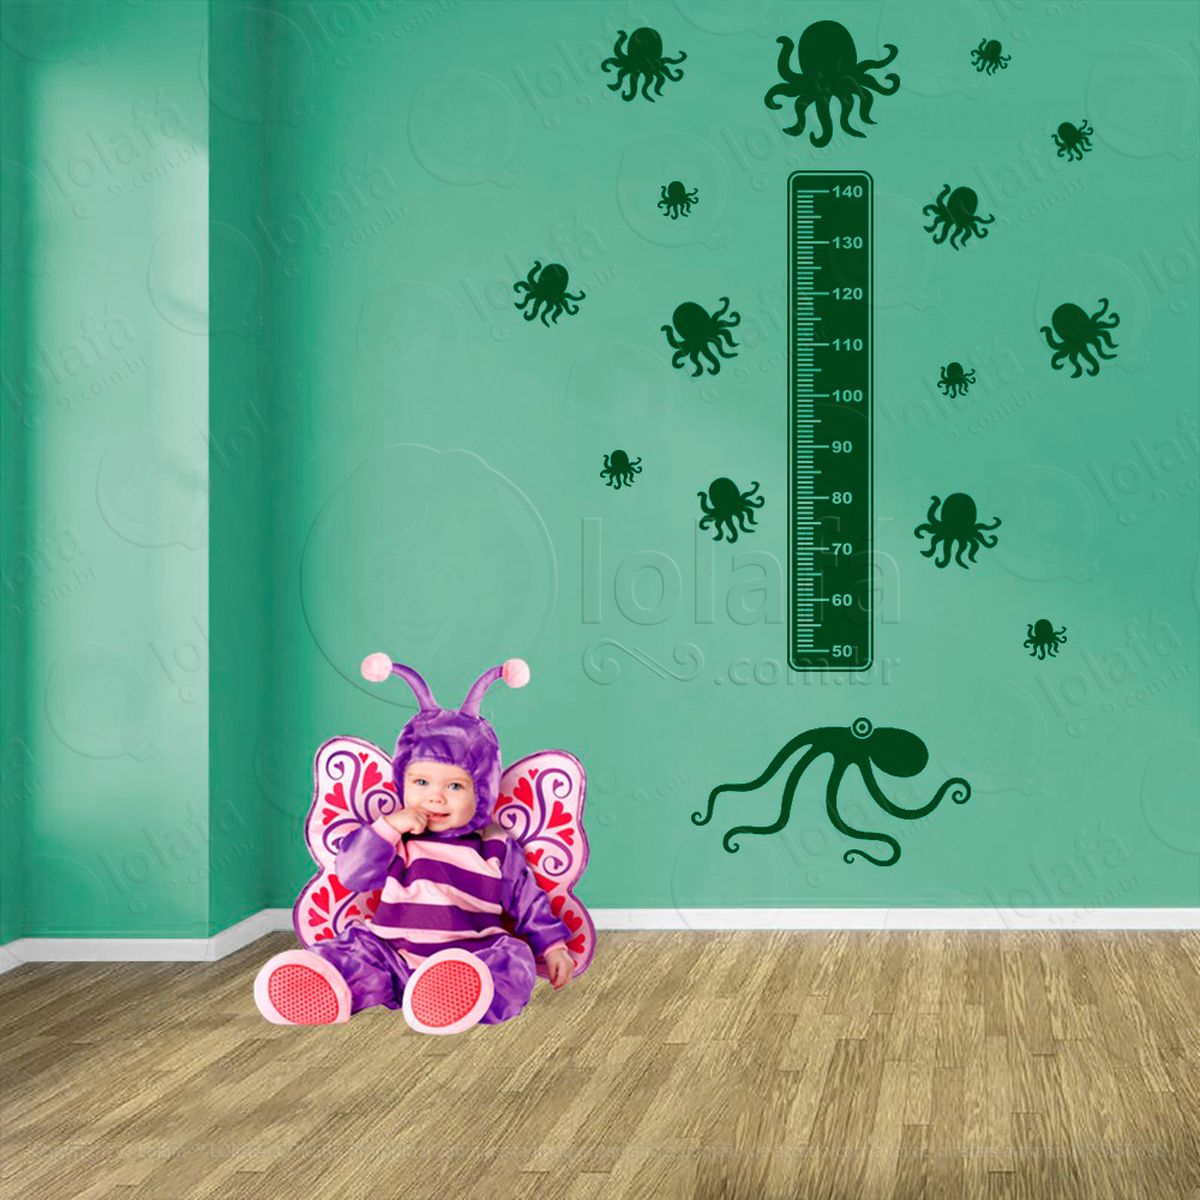 polvo e polvos adesivo régua de crescimento infantil, medidor de altura para quarto, porta e parede - mod:135